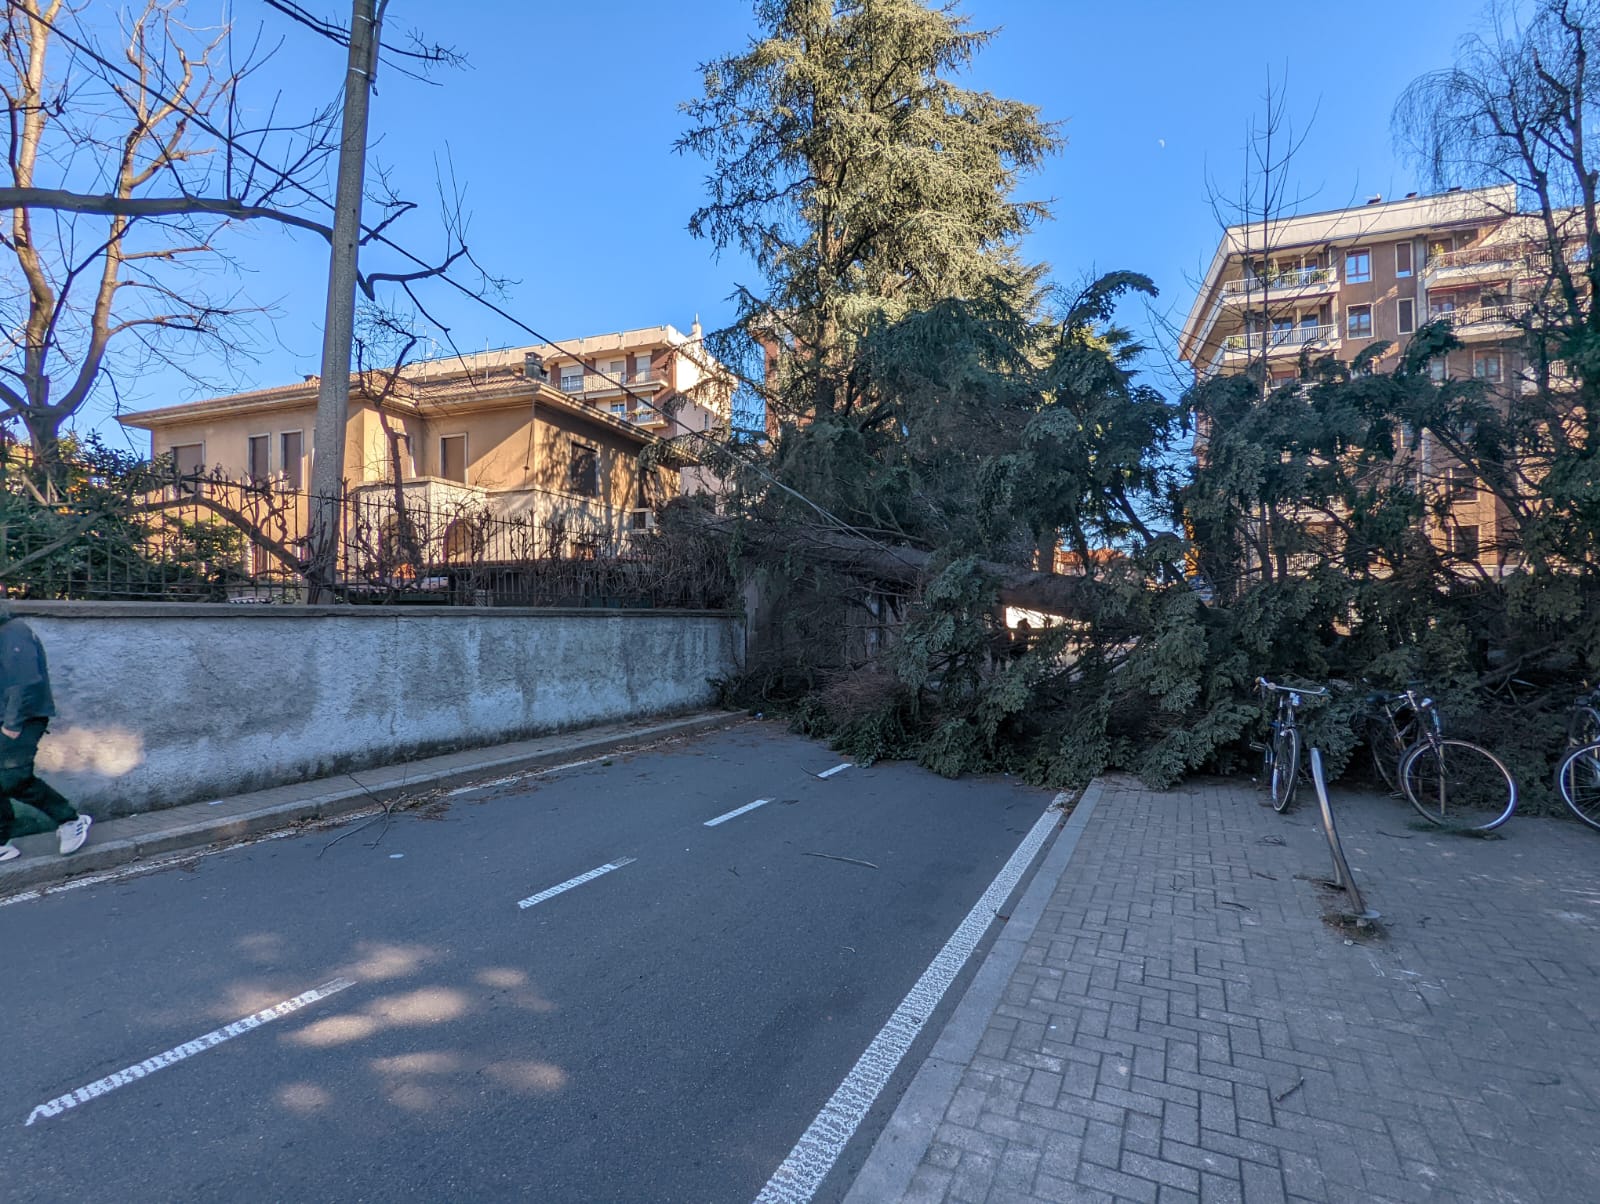 Vento, danni alla linea elettrica per la caduta dell’albero in via Cantore. Strada ancora bloccata